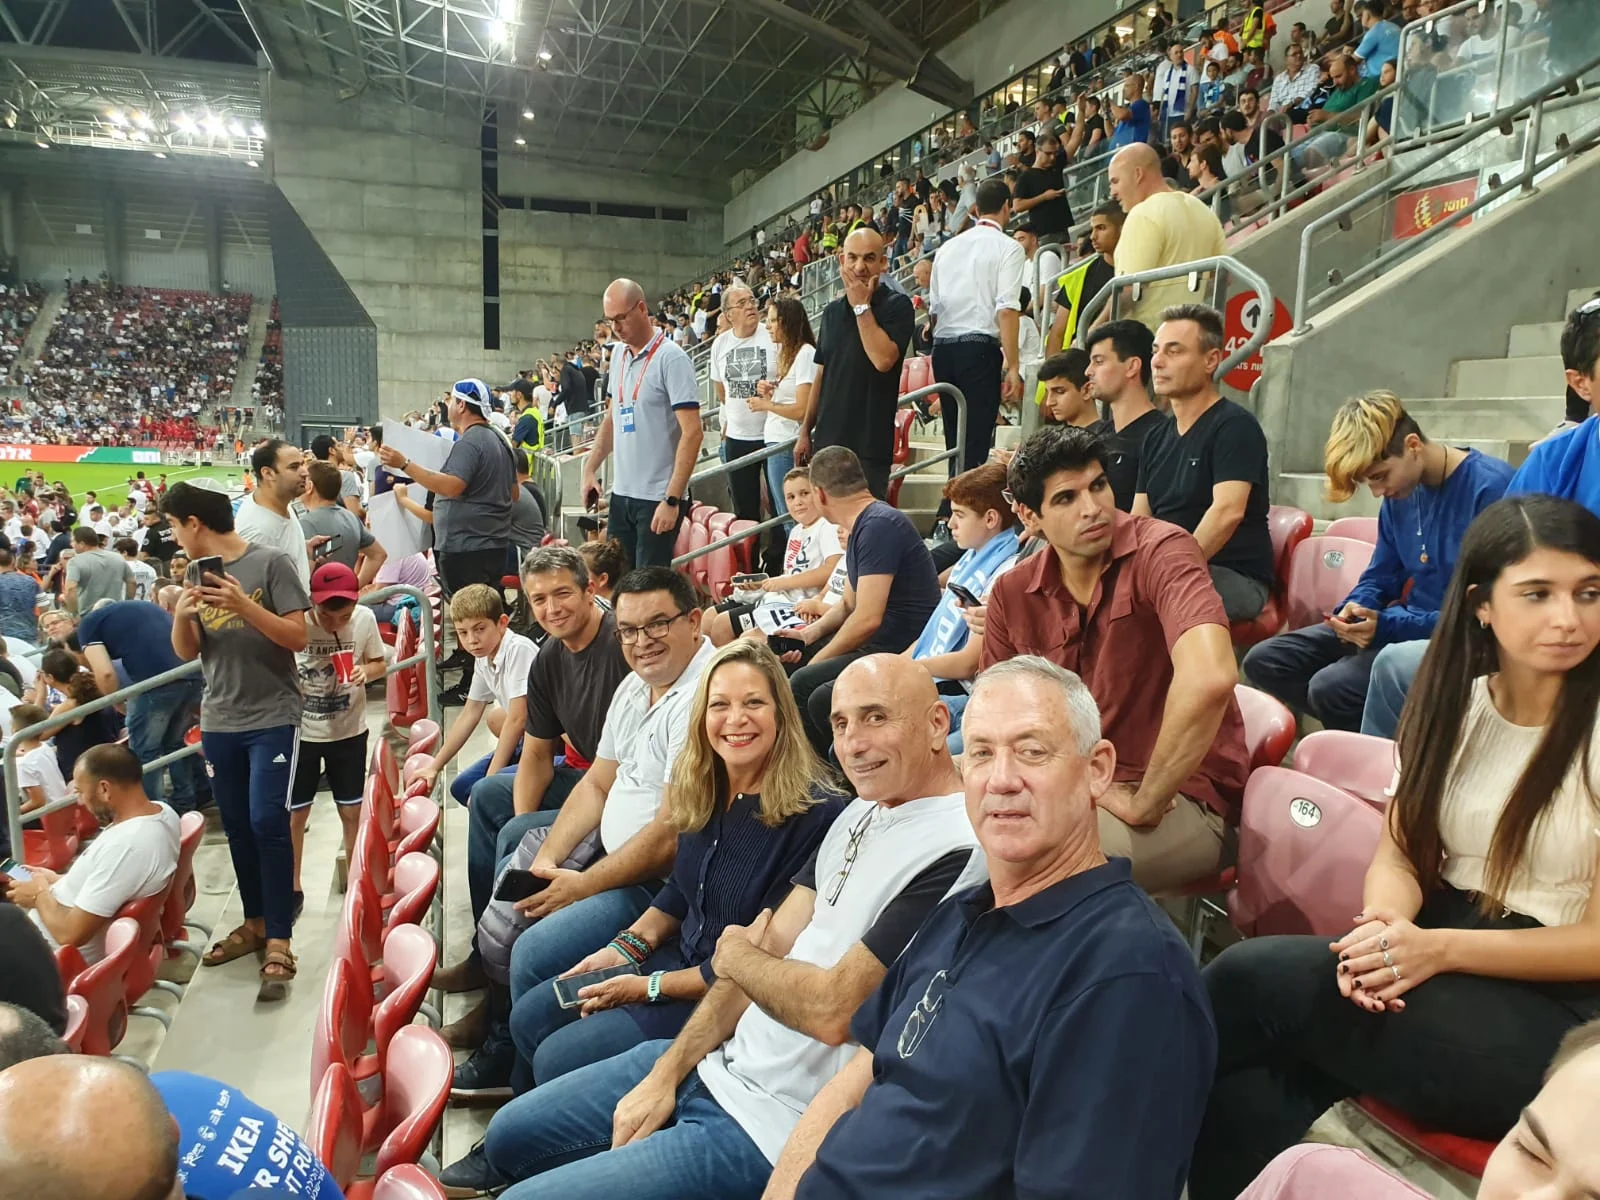 חברי מפלגת כחול לבן במשחק של נבחרת ישראל מול נבחרת לטביה בכדורגל בבאר שבע